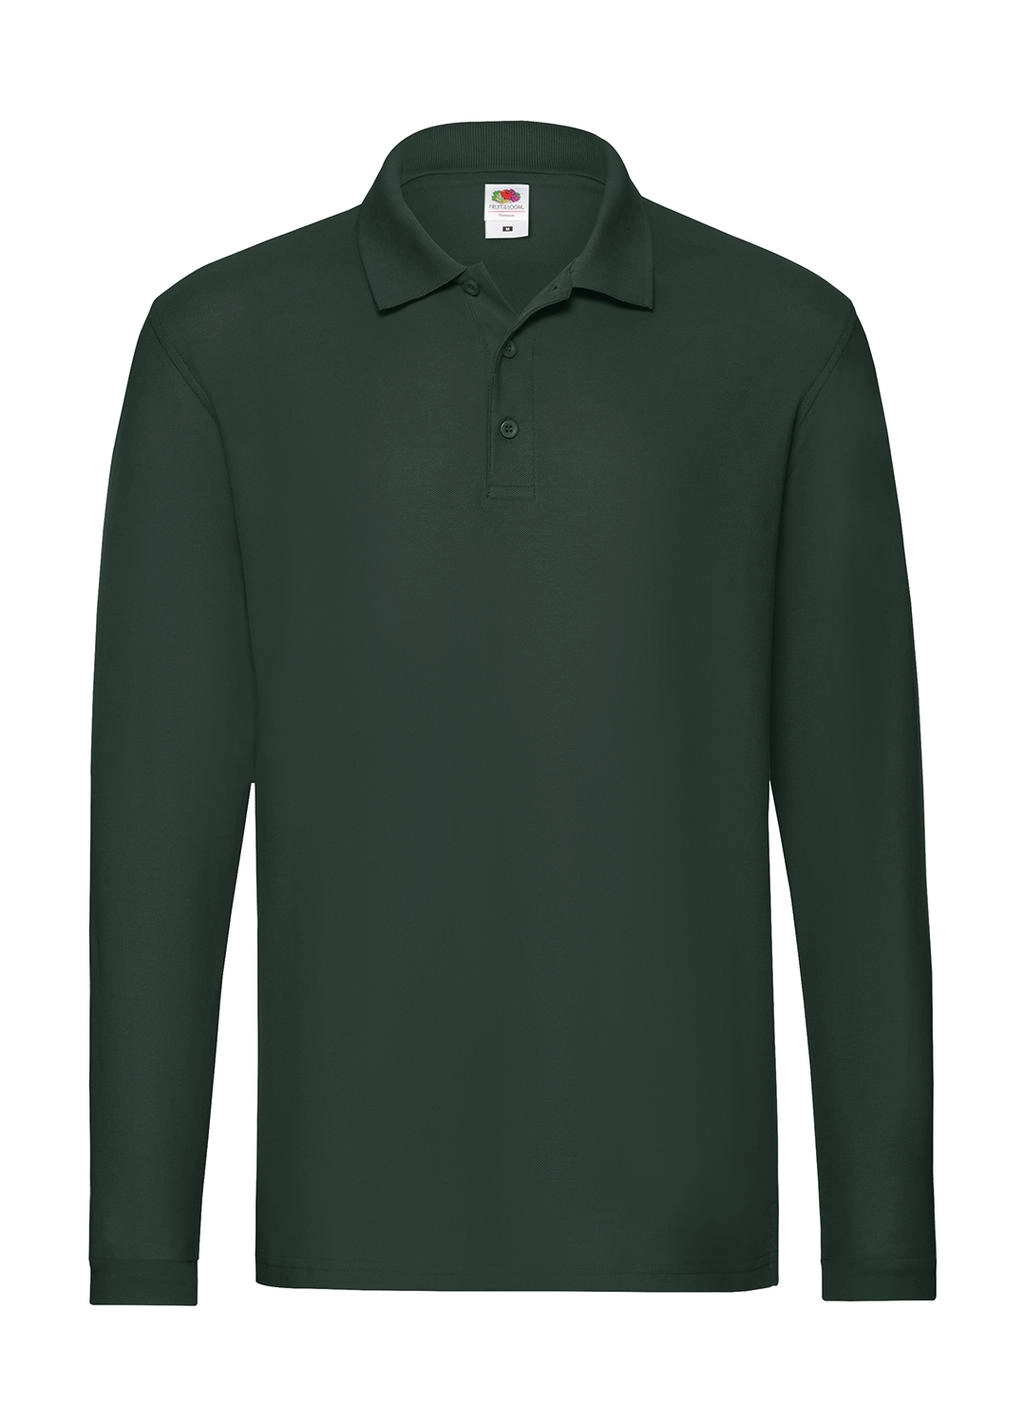 Premium Long Sleeve Polo zum Besticken und Bedrucken in der Farbe Forest Green mit Ihren Logo, Schriftzug oder Motiv.